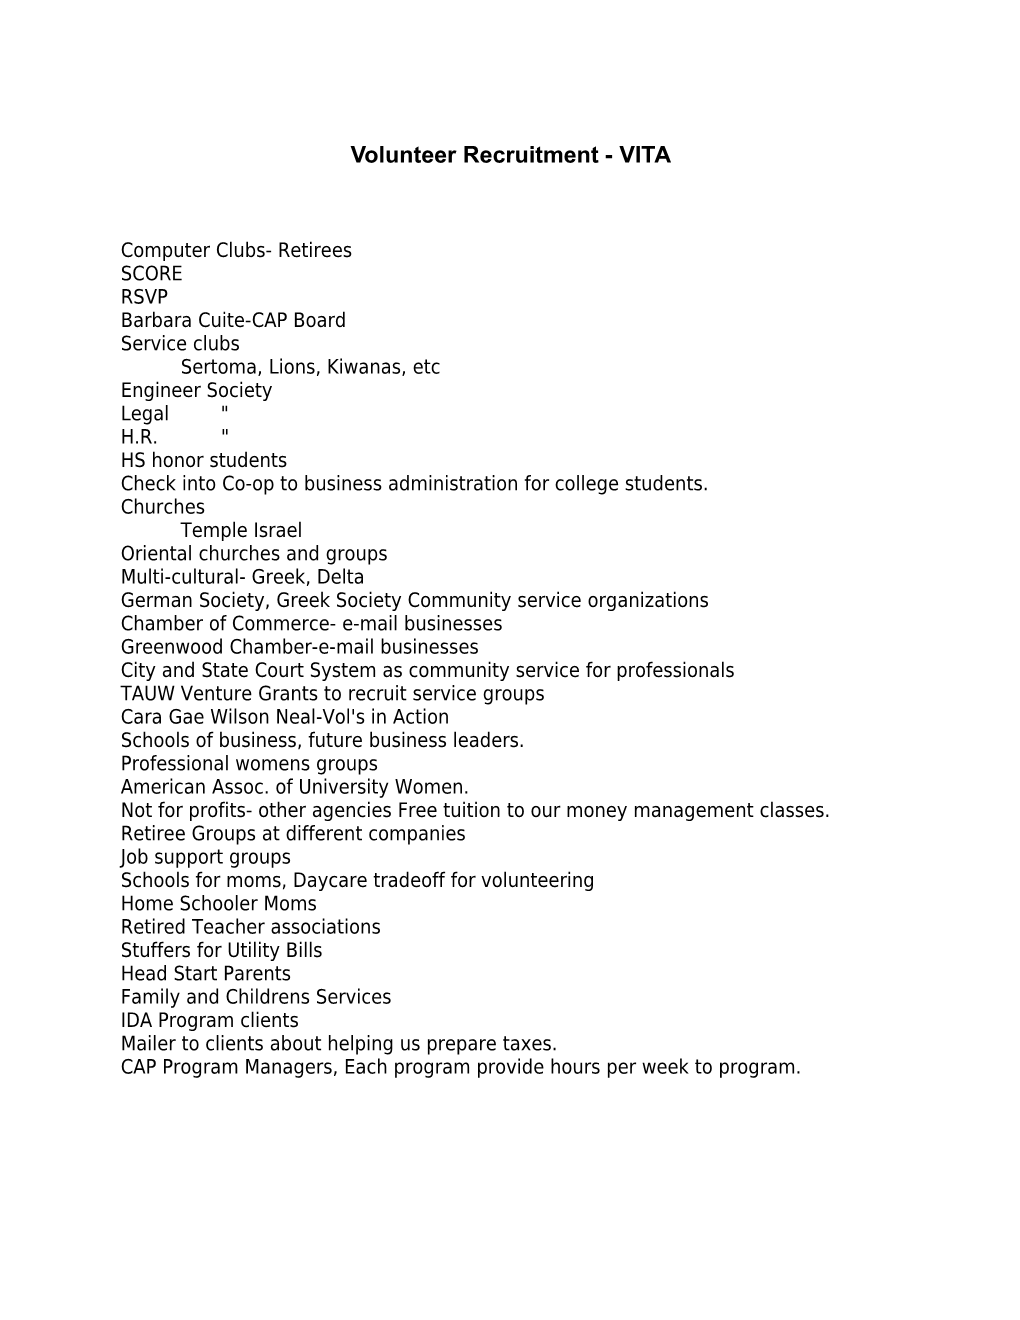 Volunteer Recruitment - EITC 2002